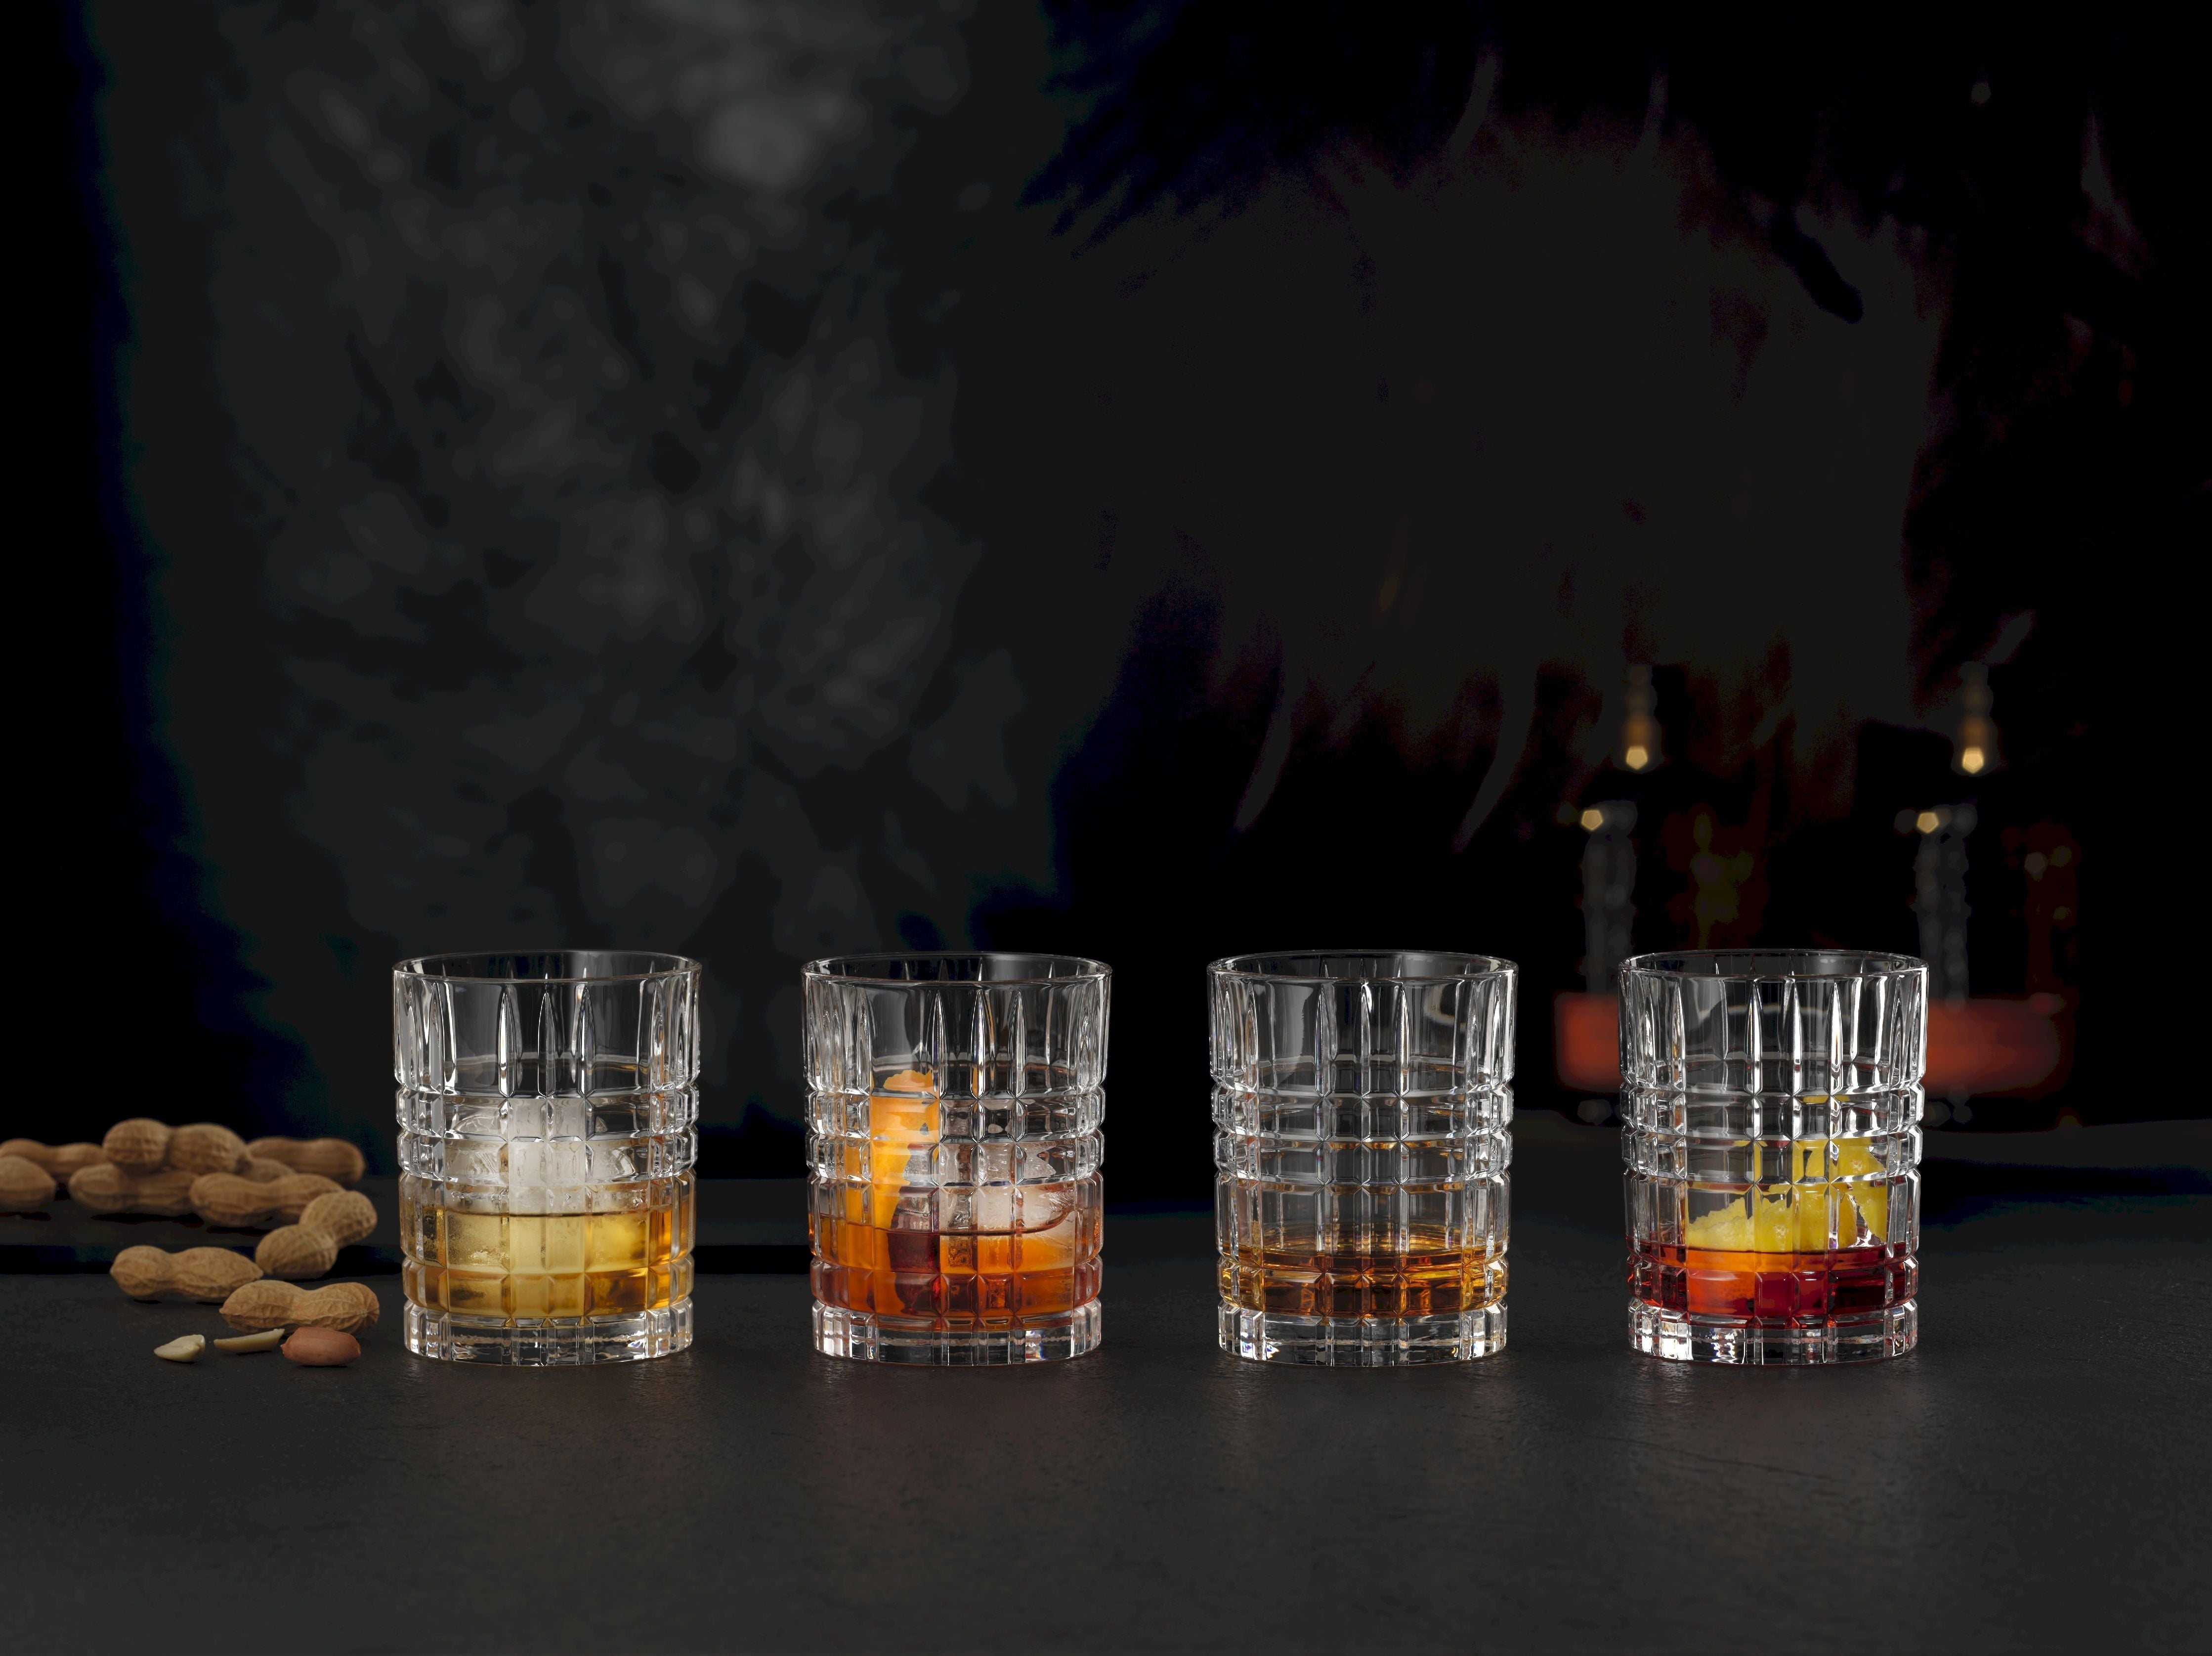 Nachtmann Vierkante whiskyglas 345 ml, set van 4